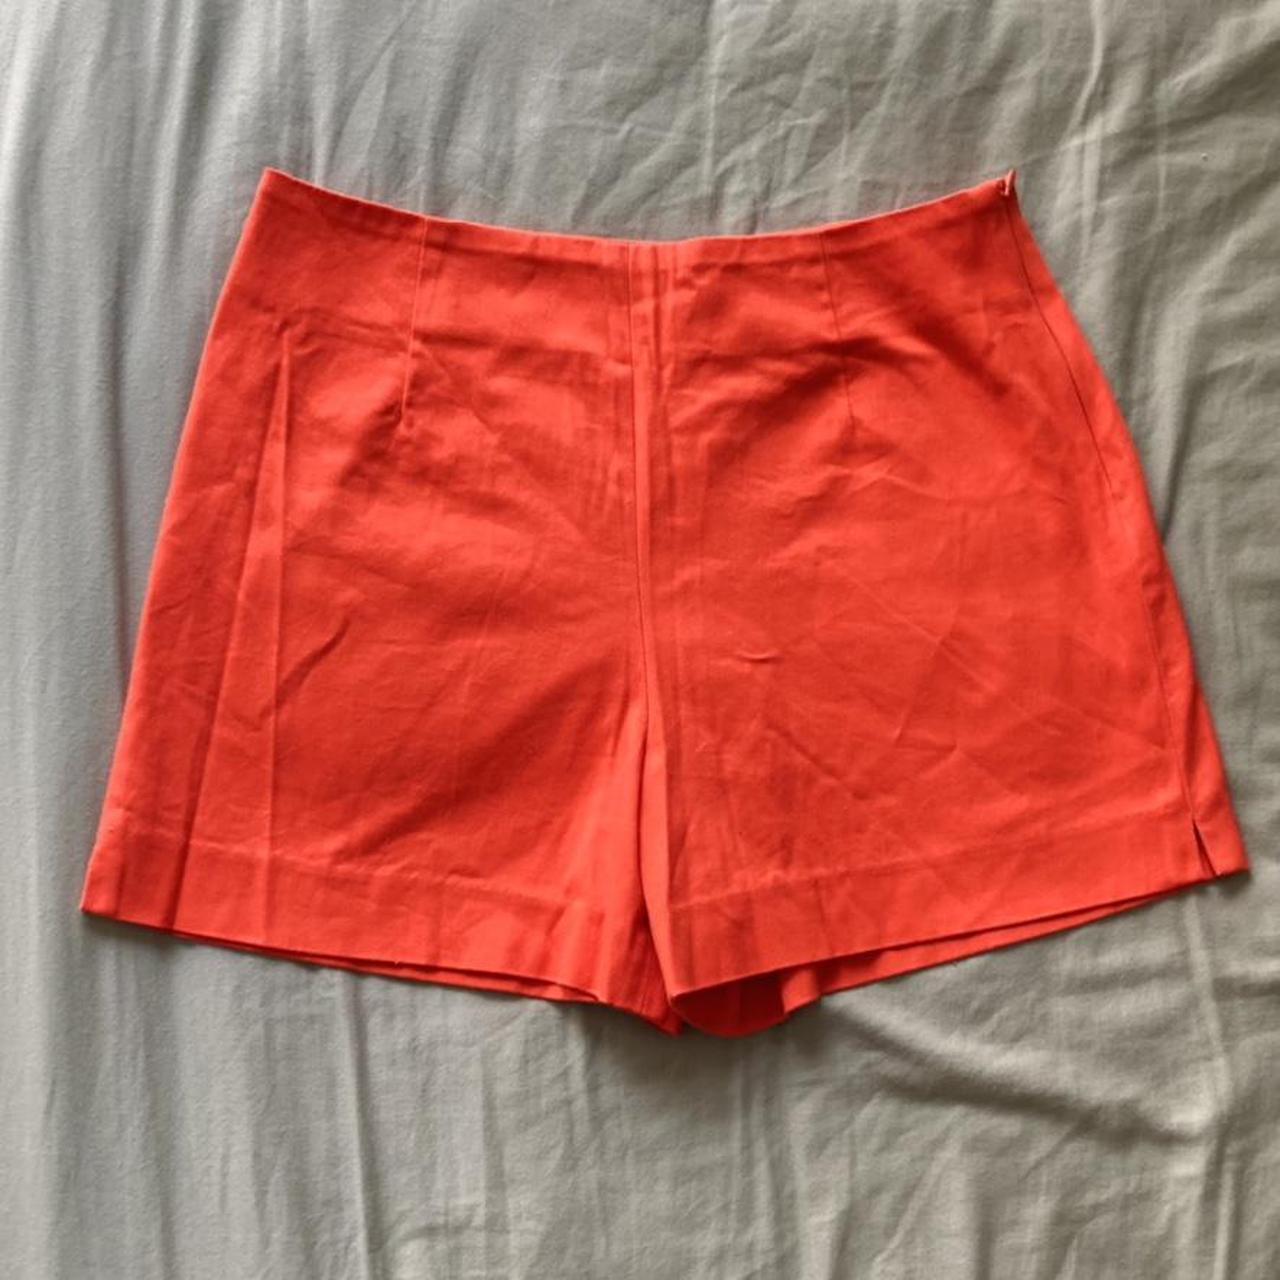 Vintage Scarlet Tap Shorts ️‍🔥🧡 ️‍🔥 so cute, beautiful... - Depop